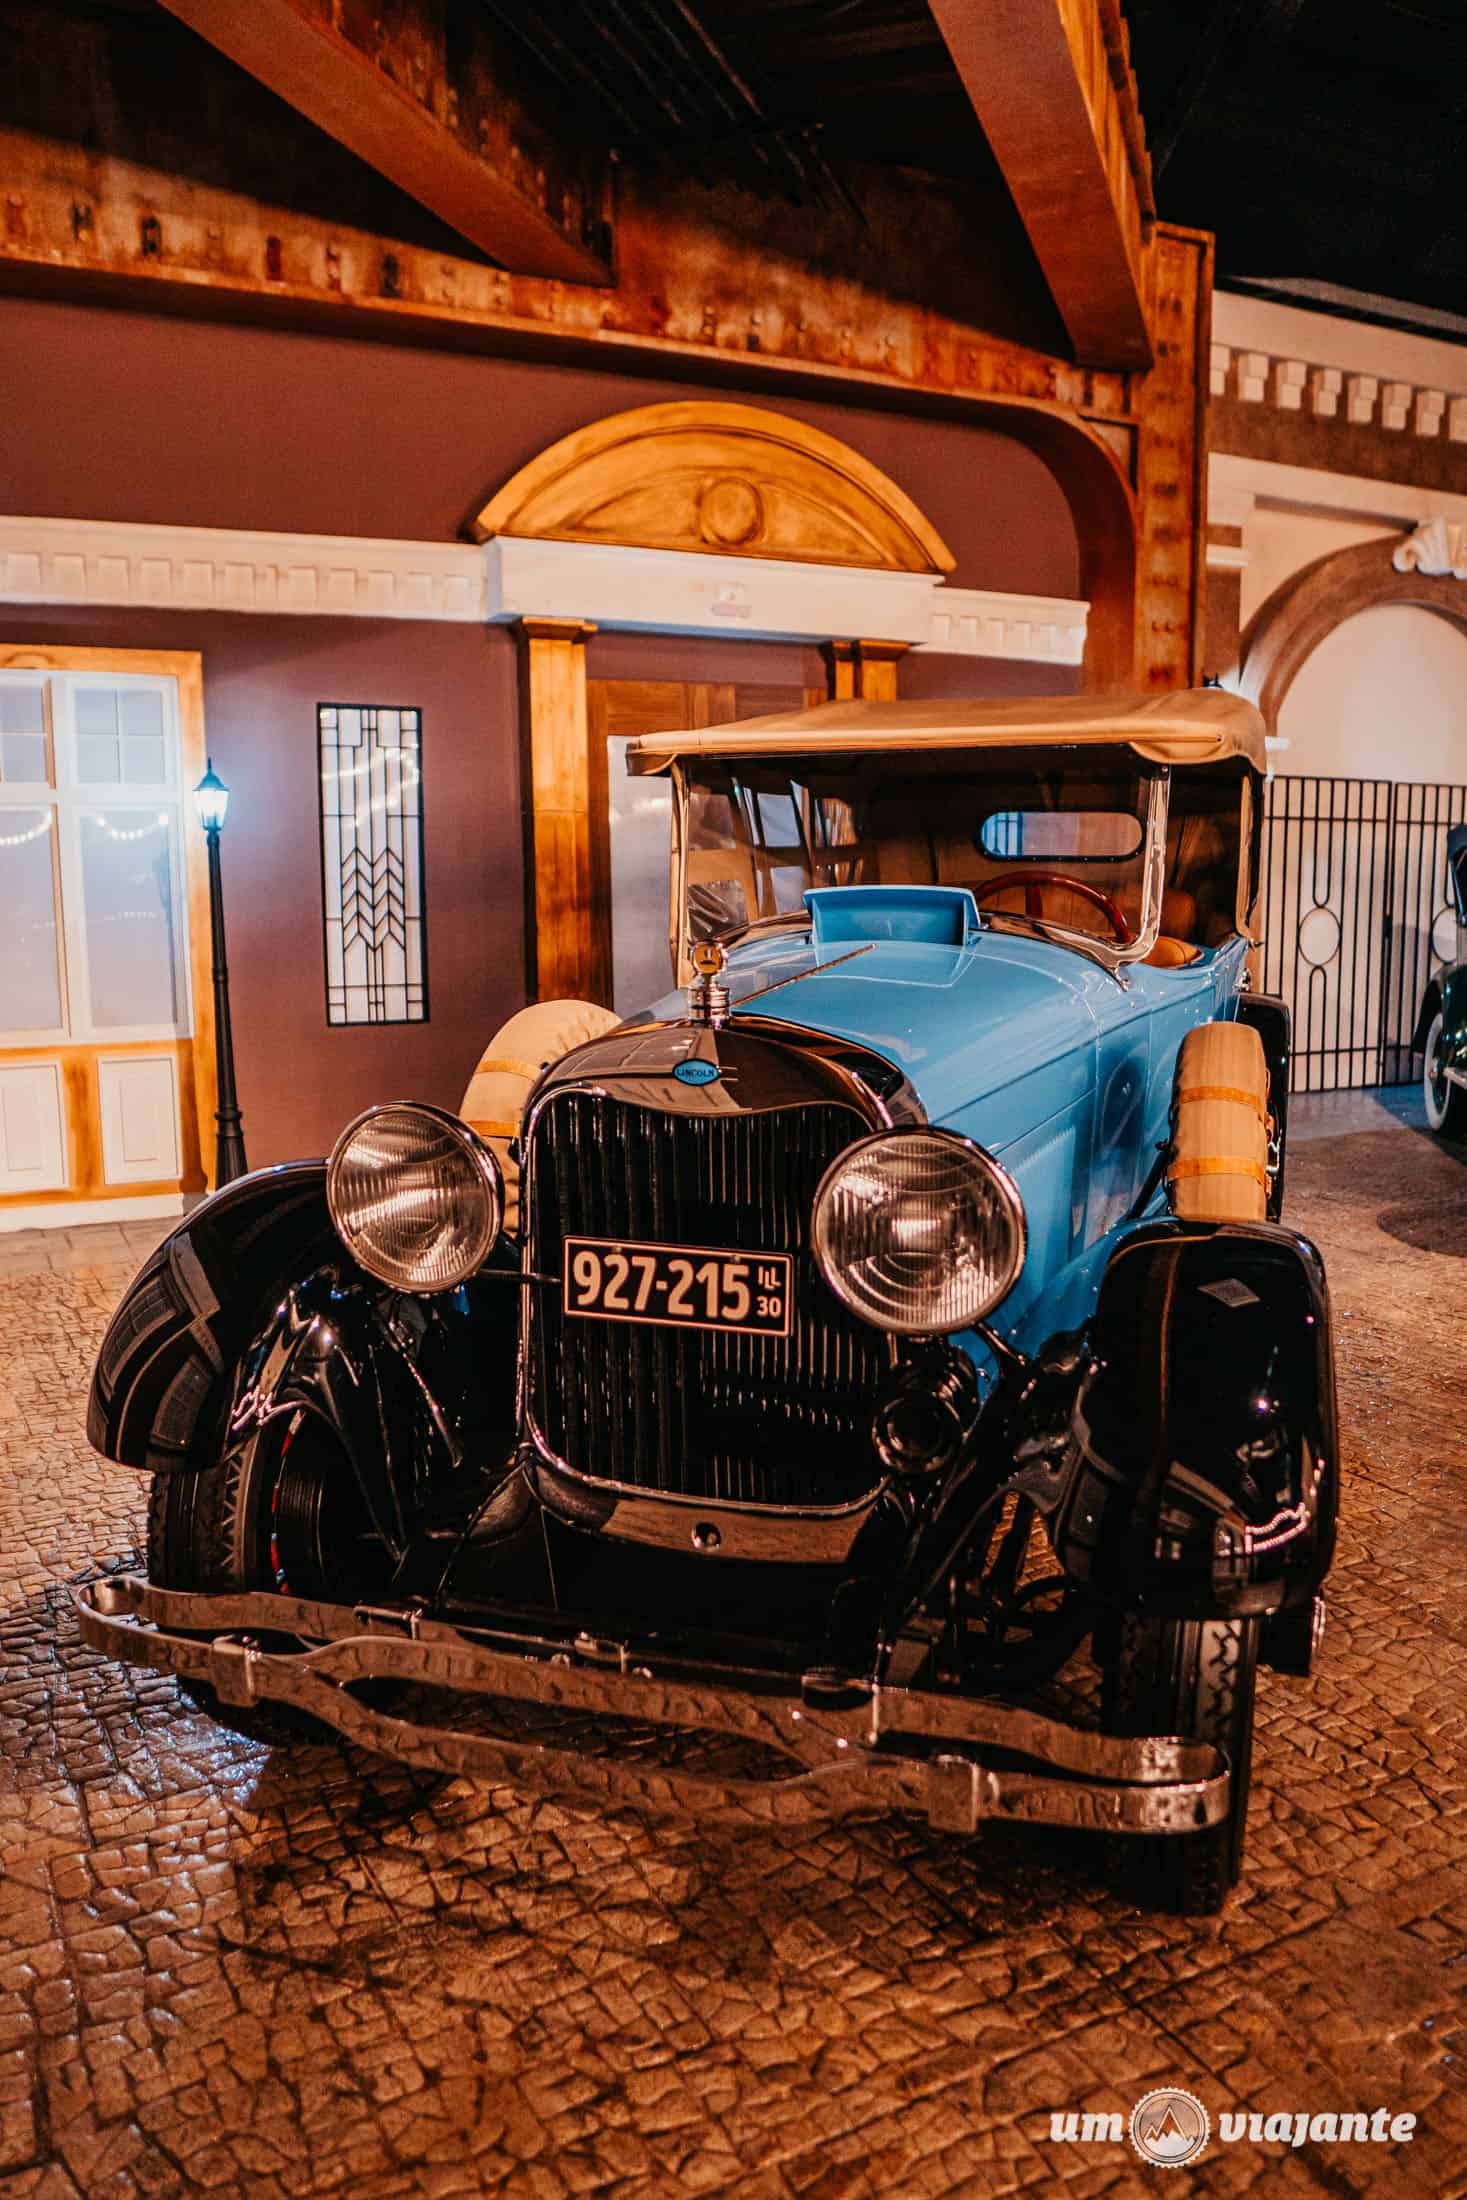 Movie Cars Fotos - Foz do Iguaçu